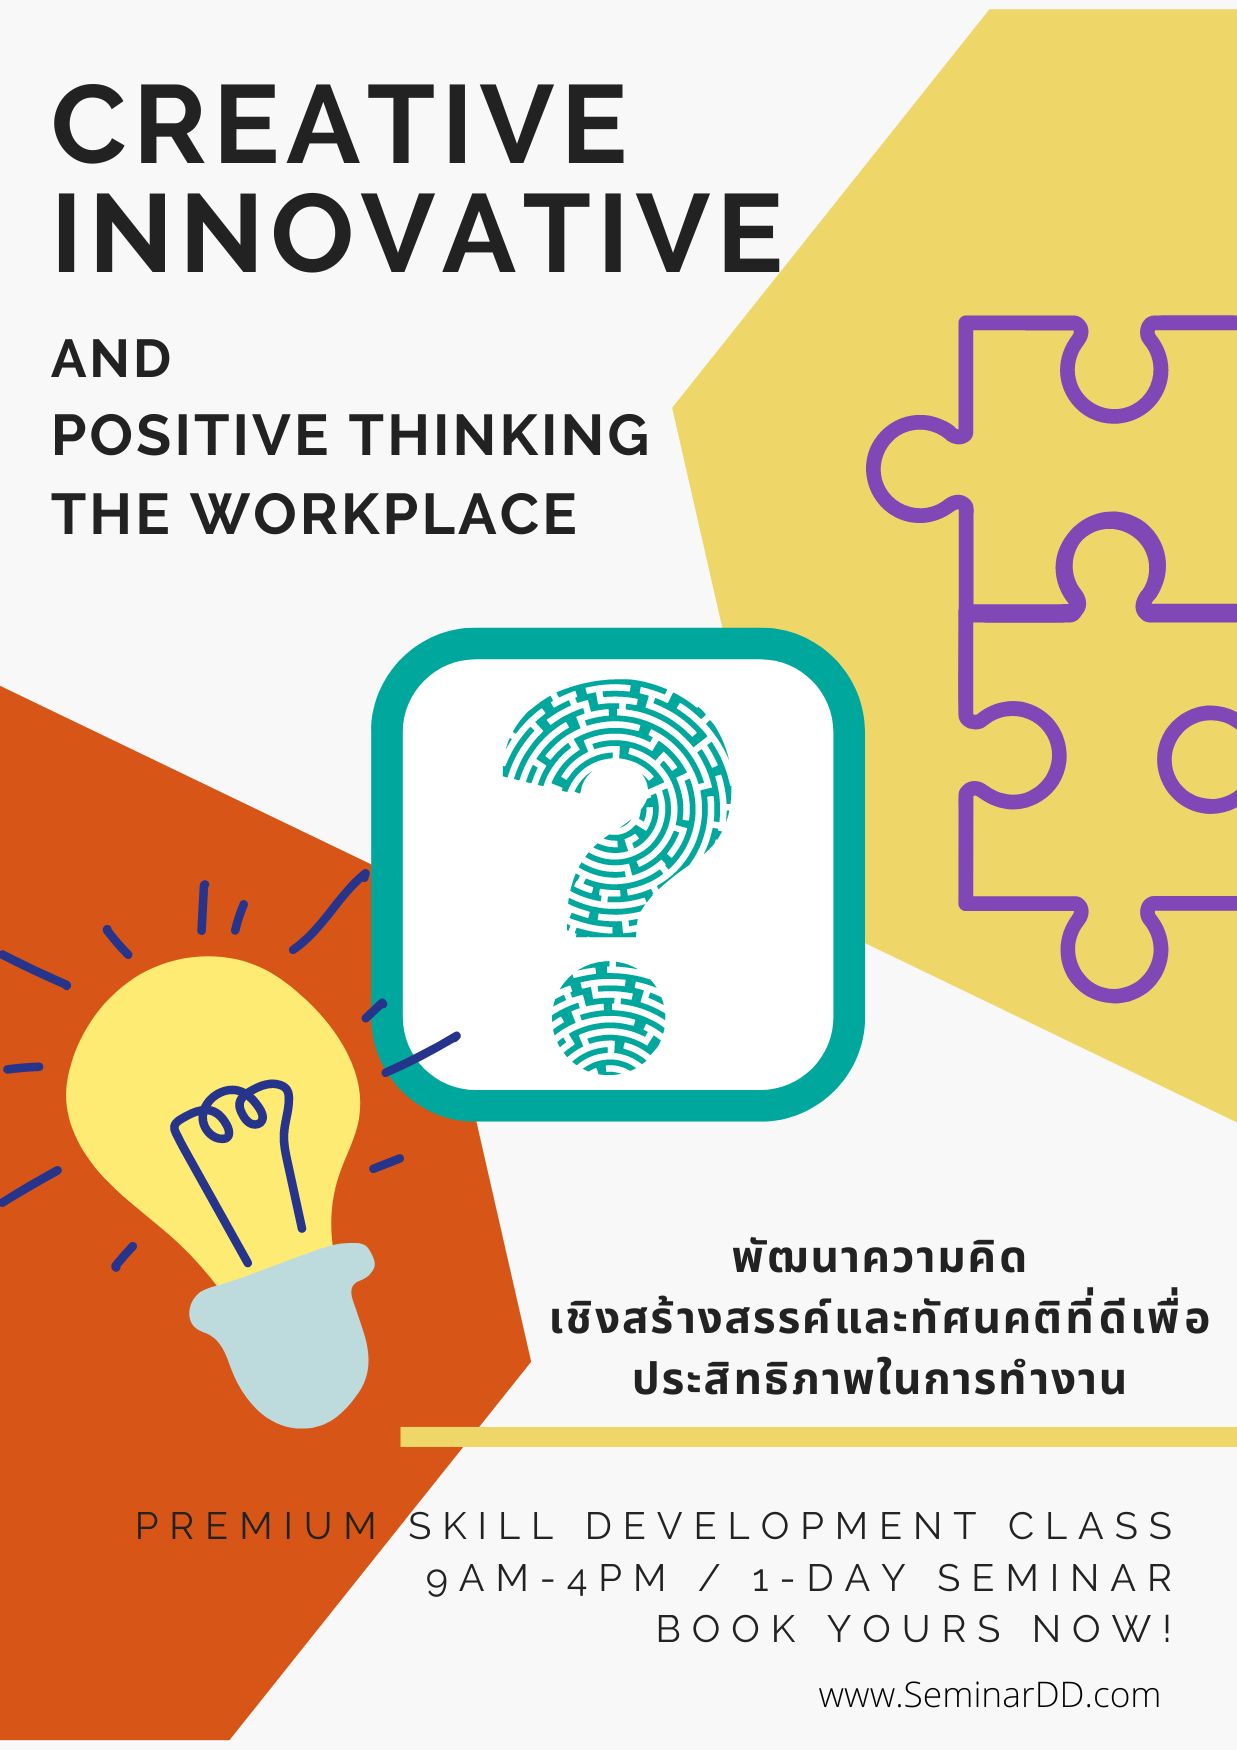 หลักสูตรอบรม หลักสูตร พัฒนาความคิดเชิงสร้างสรรค์ และทัศนคติที่ดีเพื่อประสิทธิภาพการทำงาน ( Creative Innovative and Positive Thinking in the Workplace )